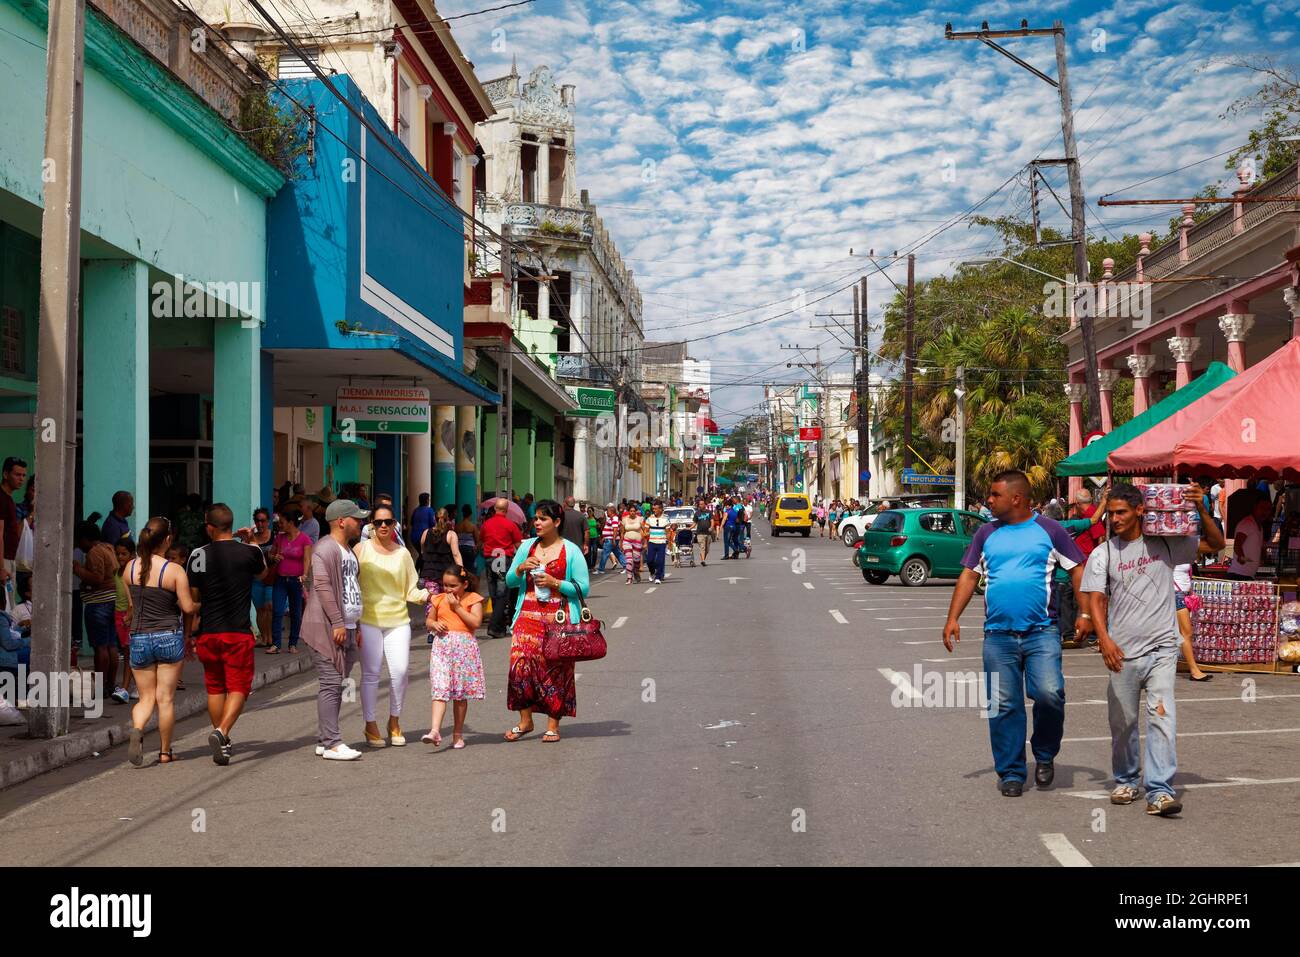 Straßenszene, viele Menschen auf der Straße, Kubaner, Kolonialhäuser, Pinar del Rio, Pinar del Rio Provinz, Karibik, Kuba Stockfoto